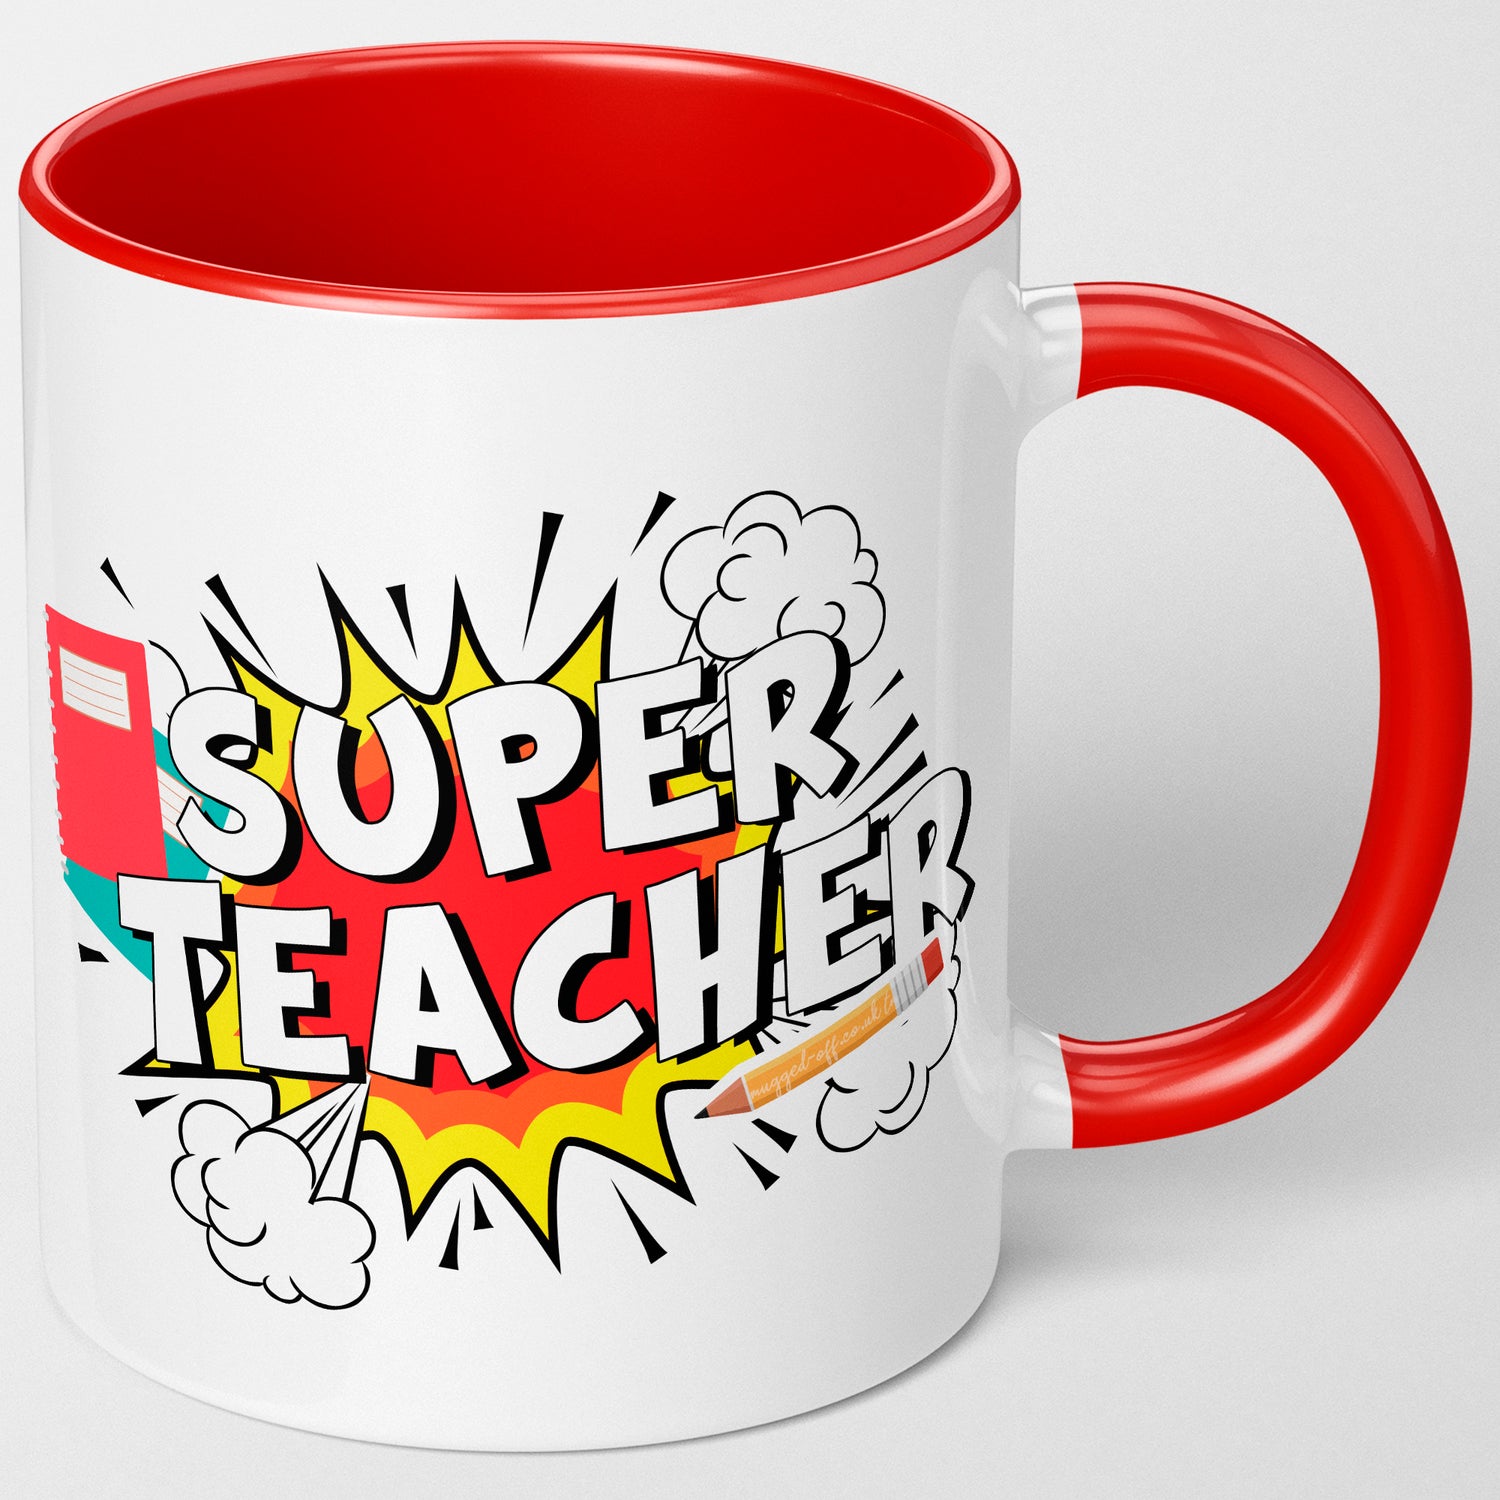 Teacher Gifts & Present Ideas For Teachers